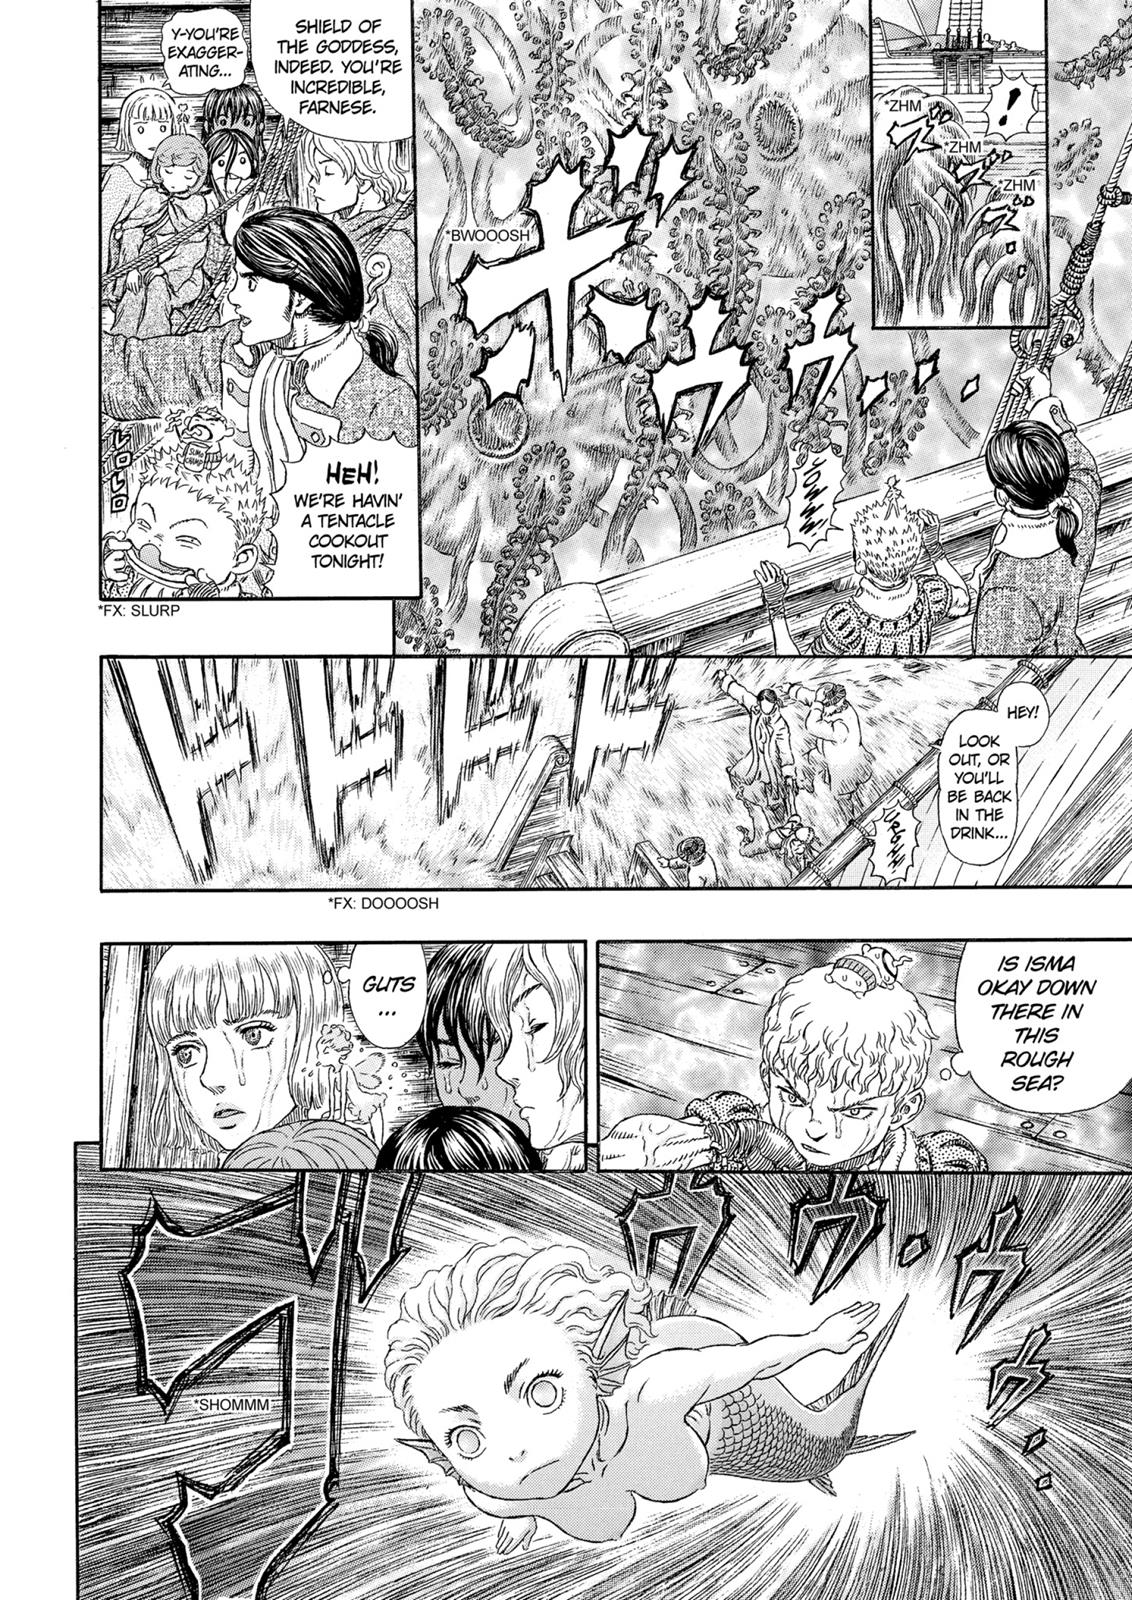 Berserk Manga Chapter 325 image 15